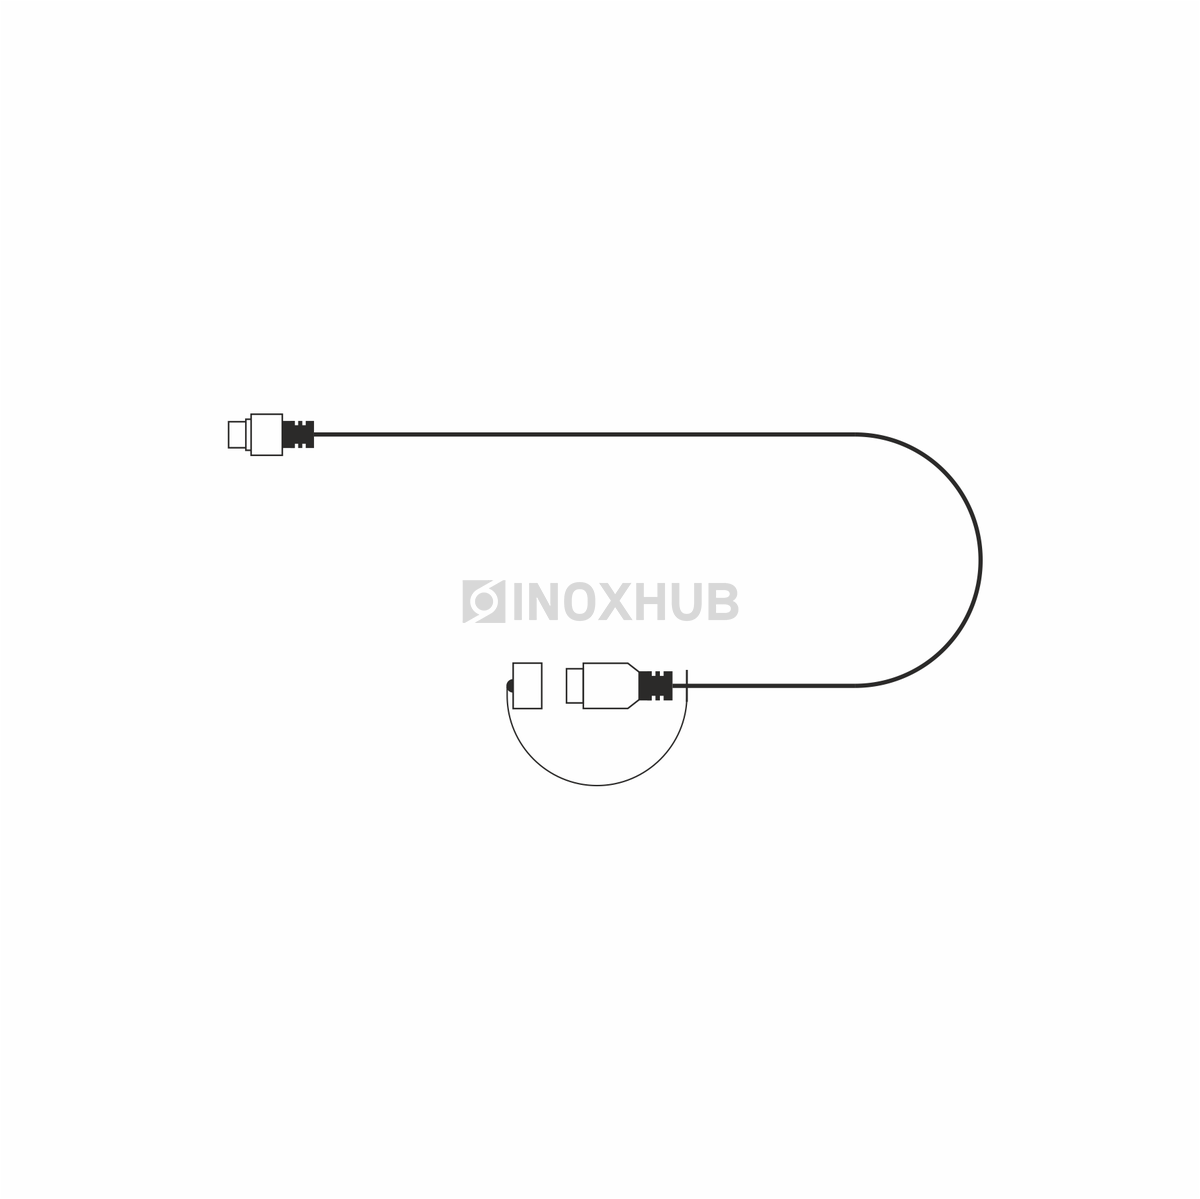 Удлинитель универсальный для гирлянд 2-pin INOXHUB, 2м, БЕЛЫЙ провод